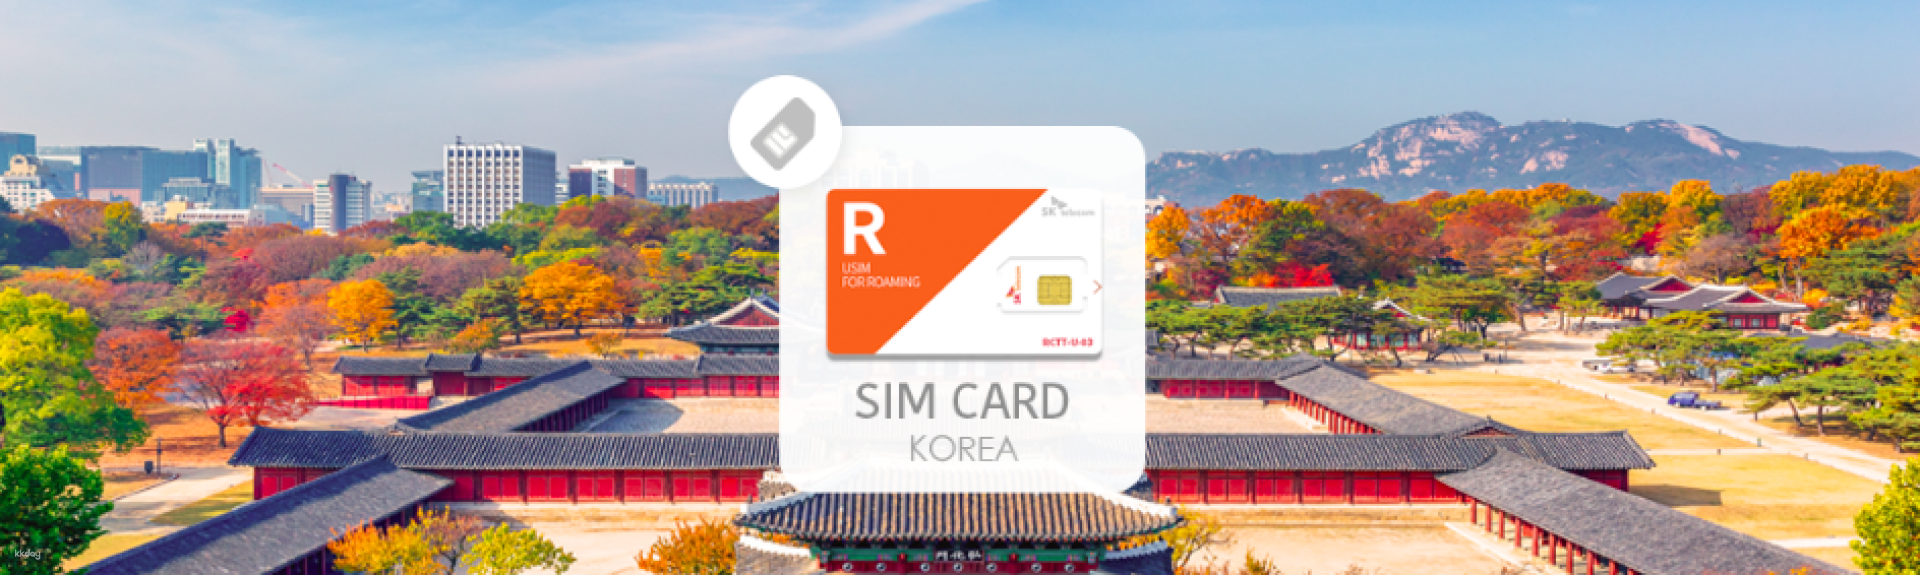 韓國-SK Telecom4G/LTE 無限數據SIM卡&電話接聽&短訊| 機場領取| 限時優惠中